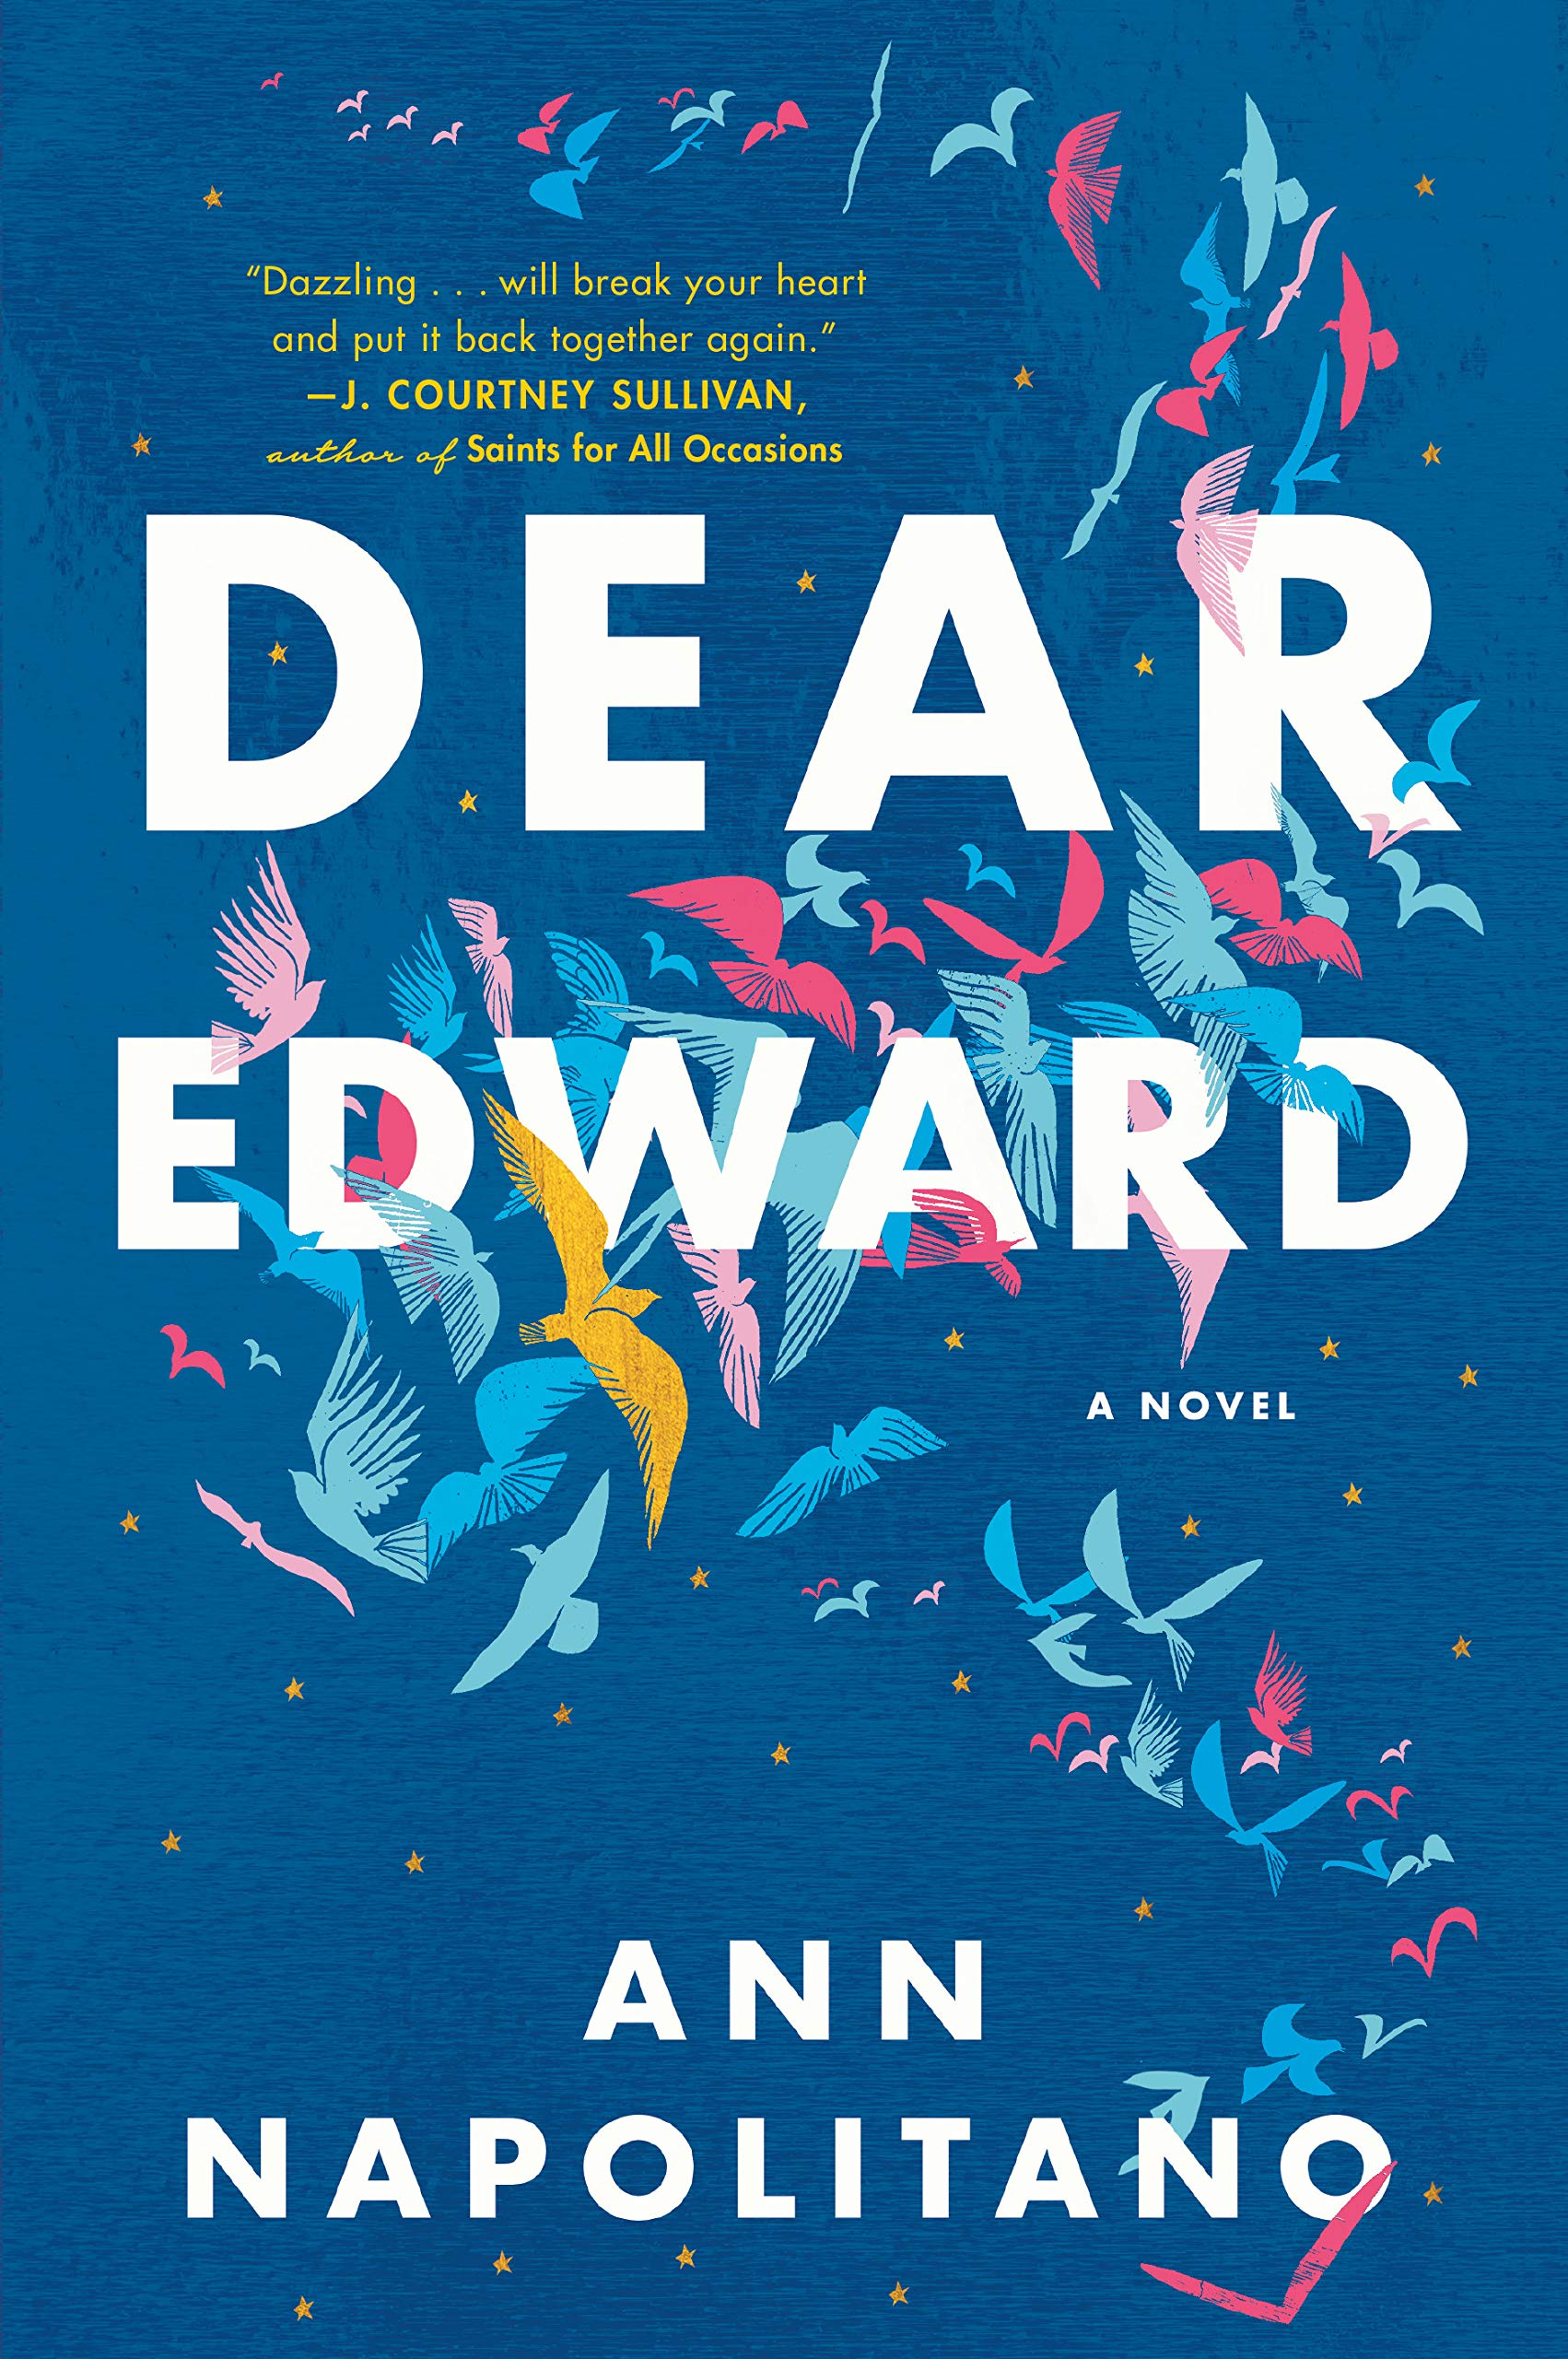 Dear Edward: A Novel